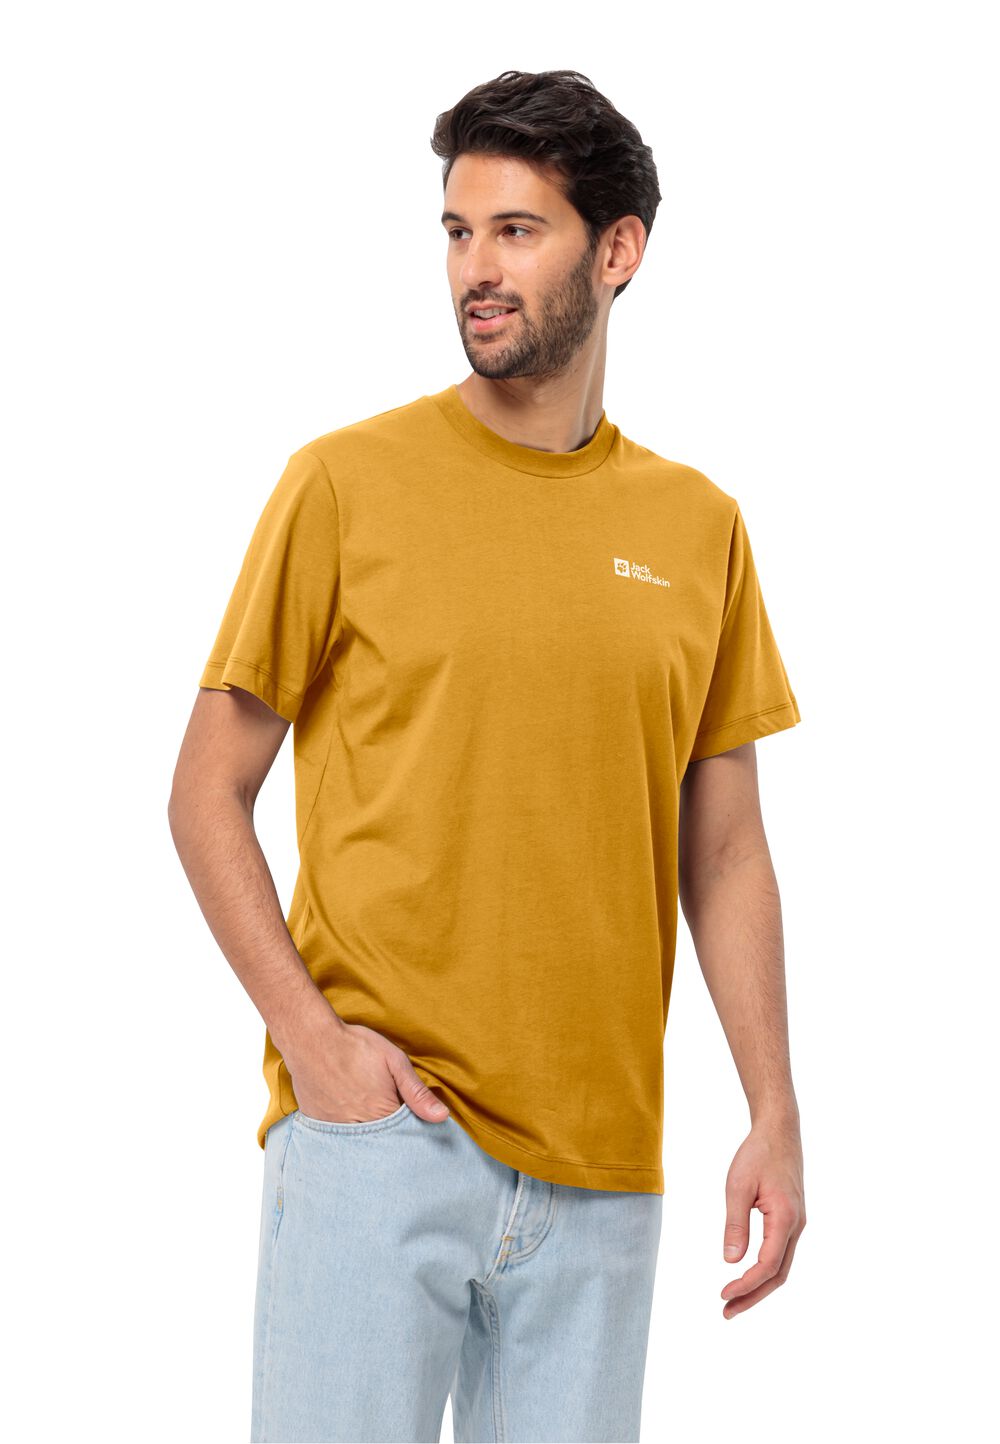 Jack Wolfskin Essential T-Shirt Men Heren T-shirt van biologisch katoen 3XL bruin curry